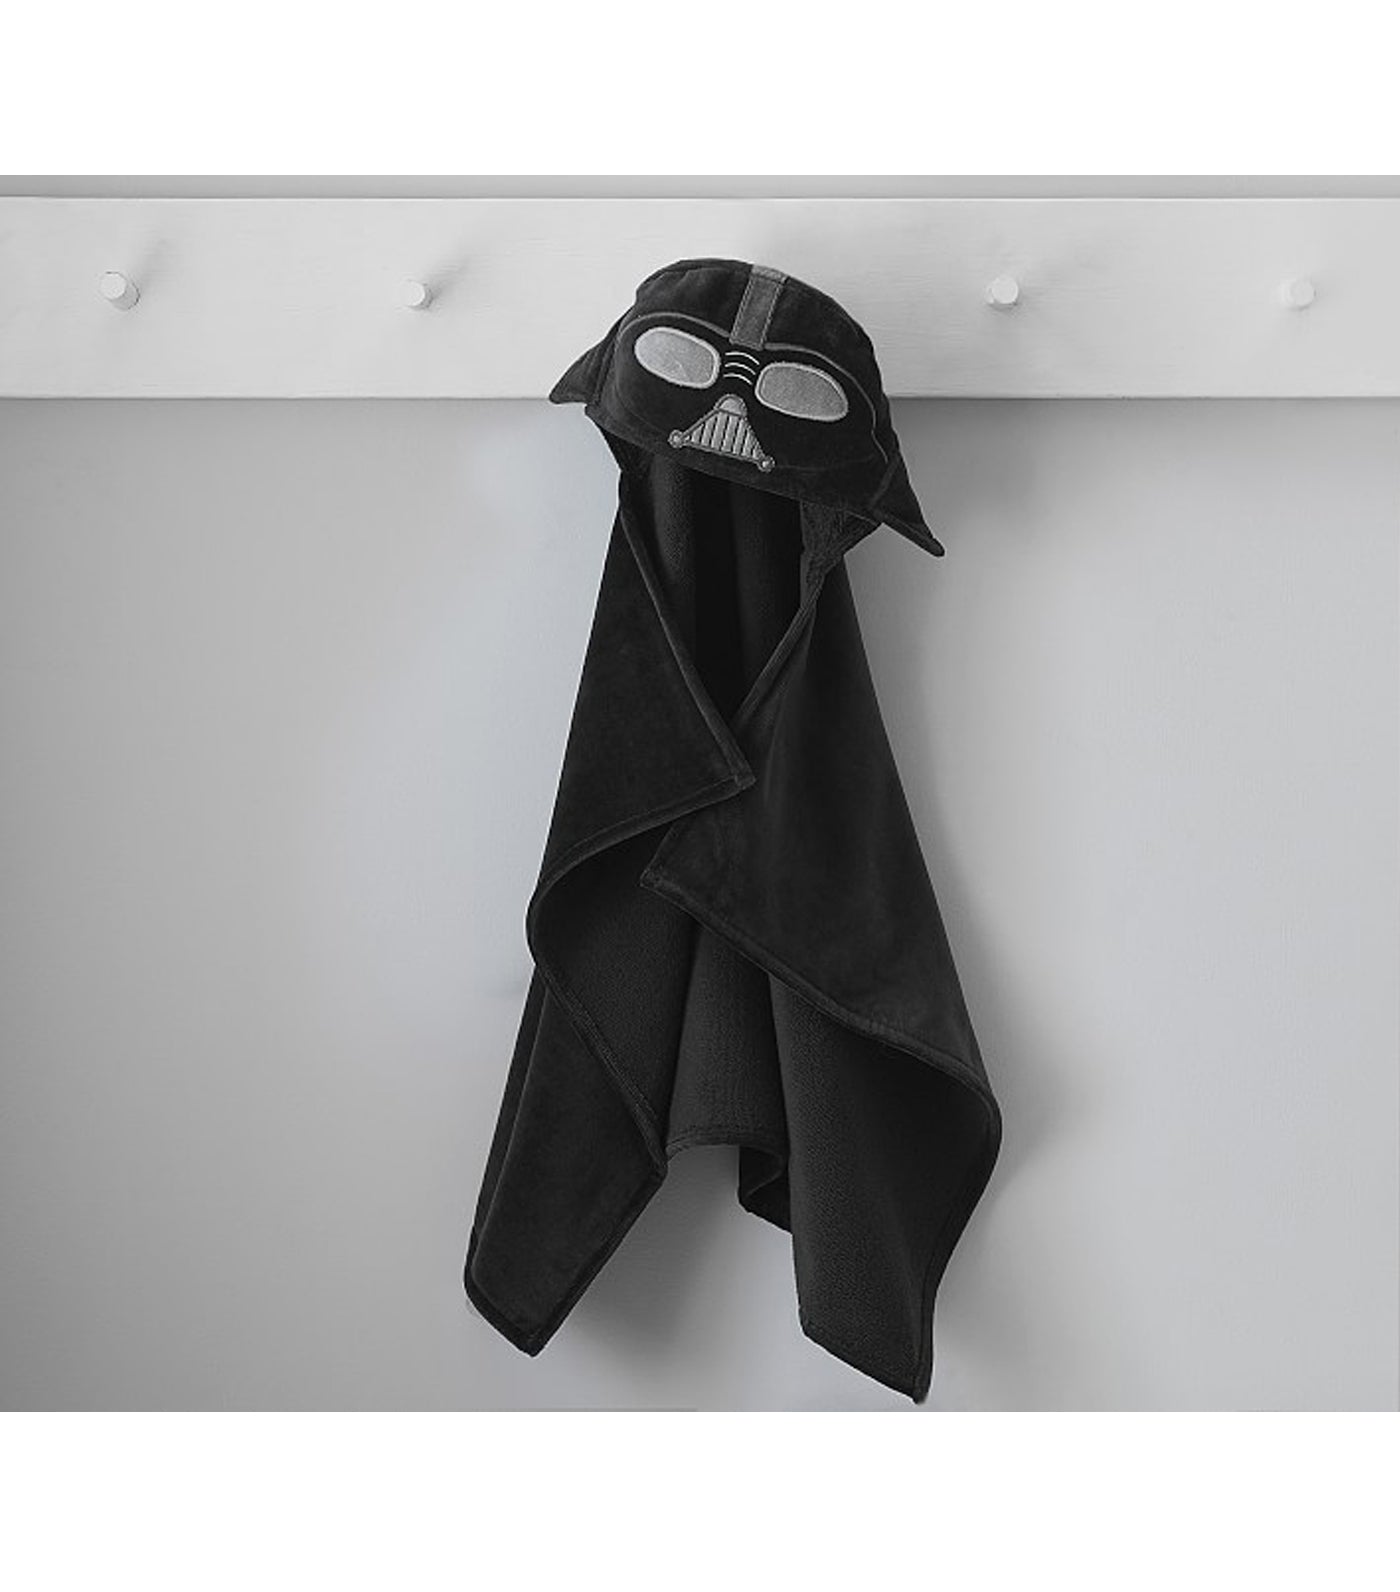 Darth Vader Nursery Critter Hooded Towel - Black